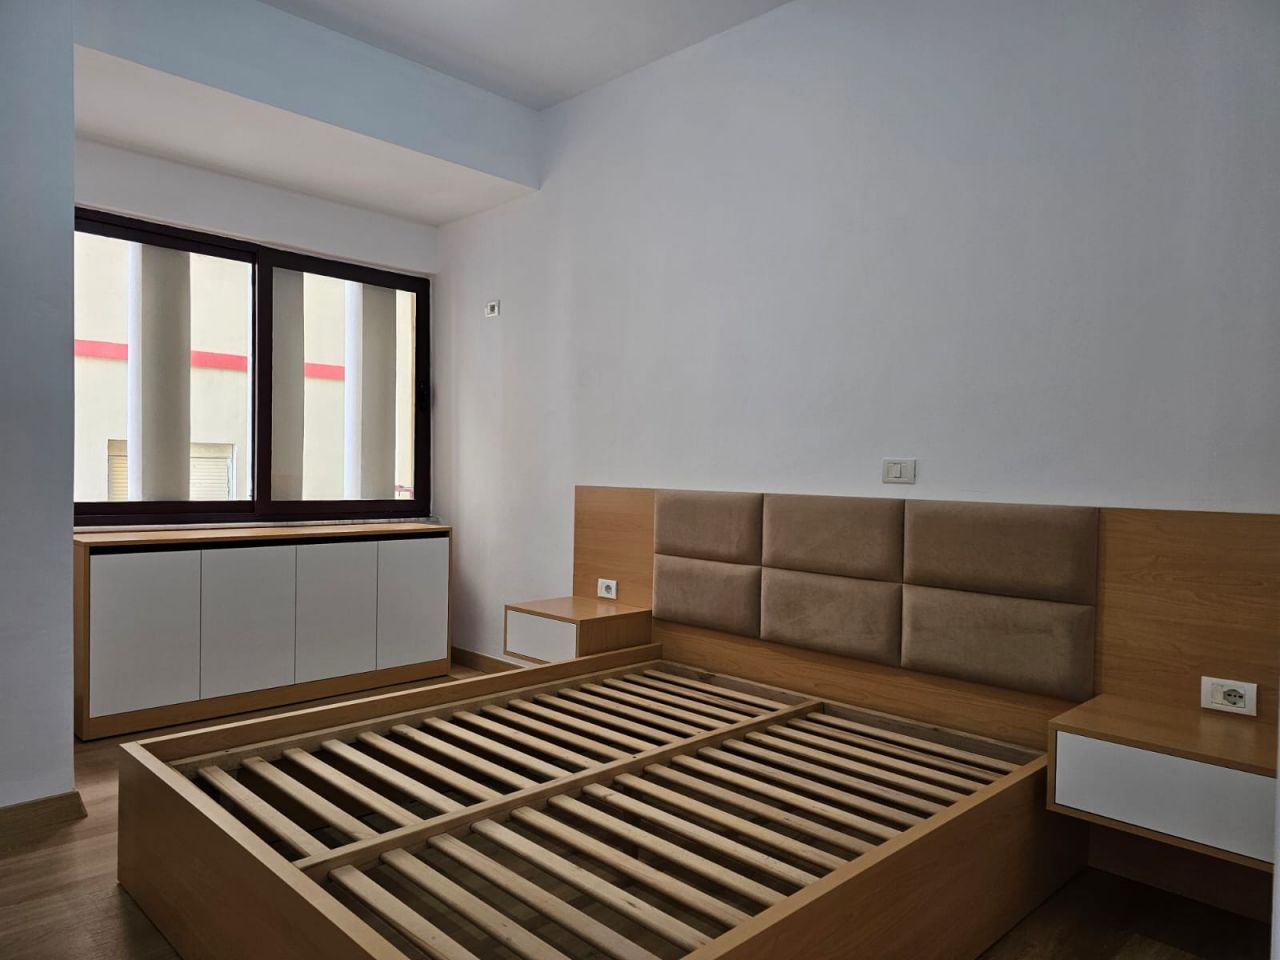 Mieszkanie Z Jedną Sypialnią Na Sprzedaż W Sarandzie W Albanii Położone W Dobrze Zorganizowanej Okolicy Ze Wspaniałym Widokiem Na Morze